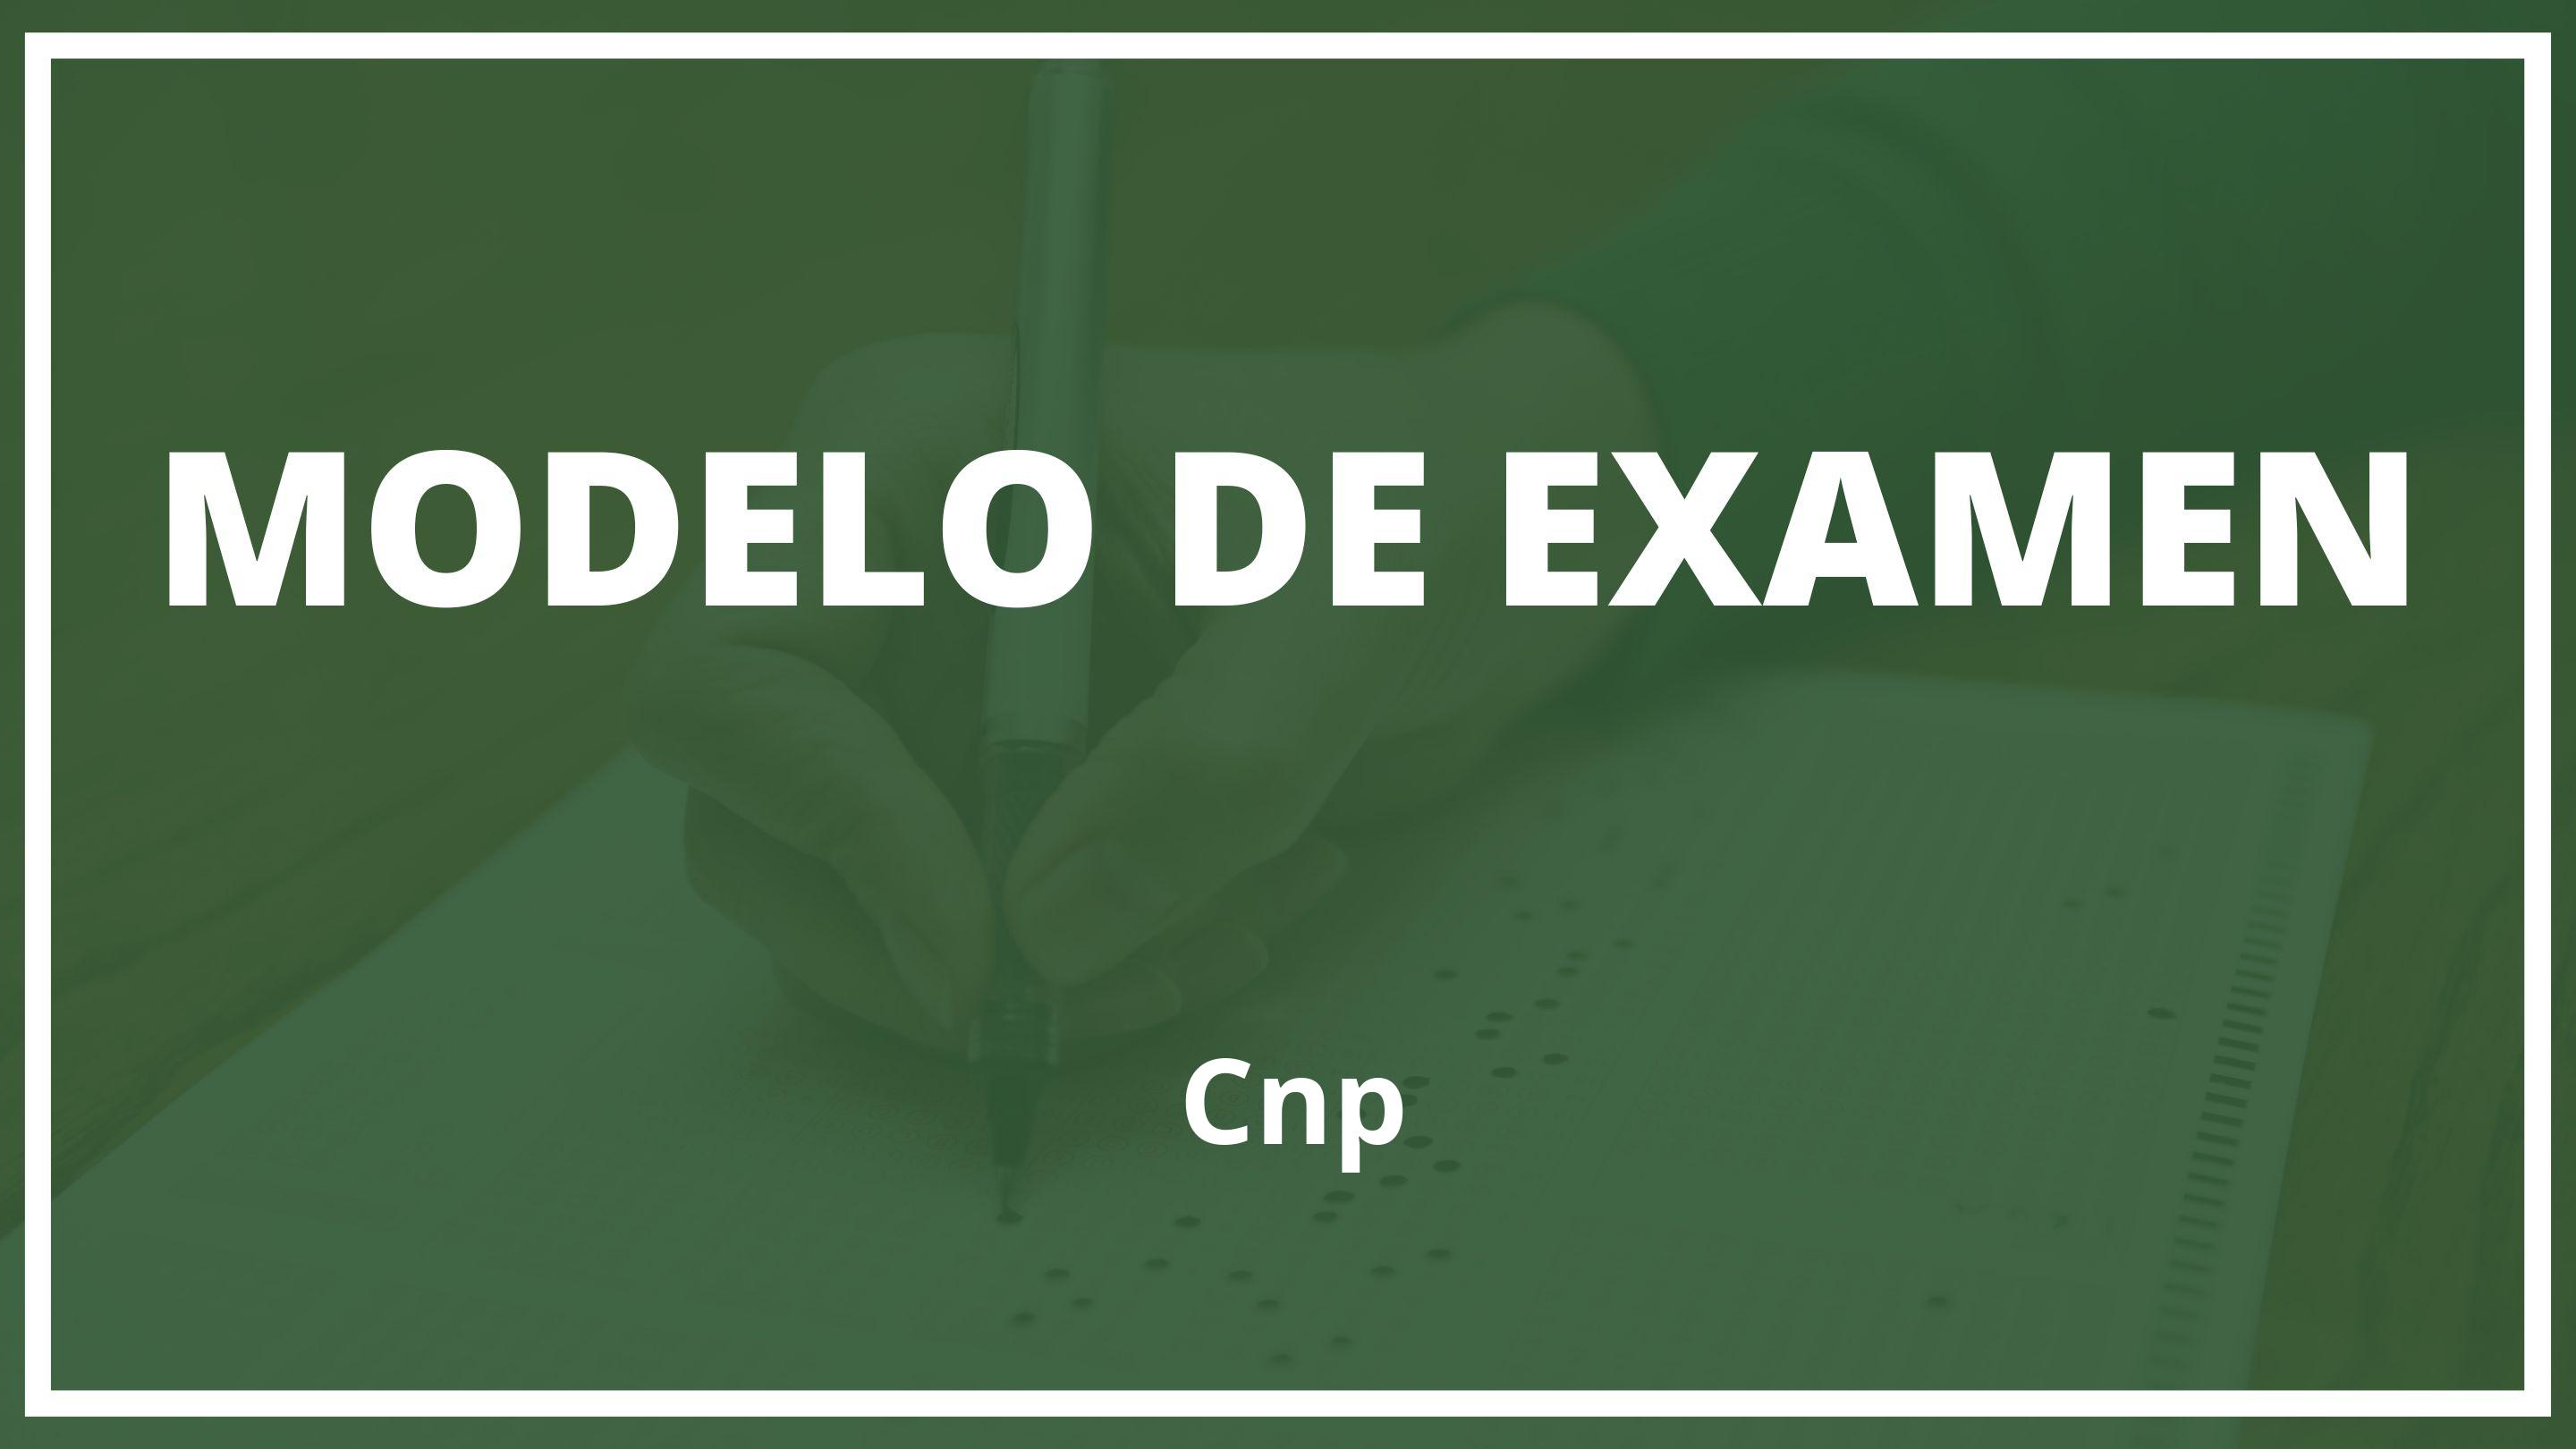 Examen Cnp